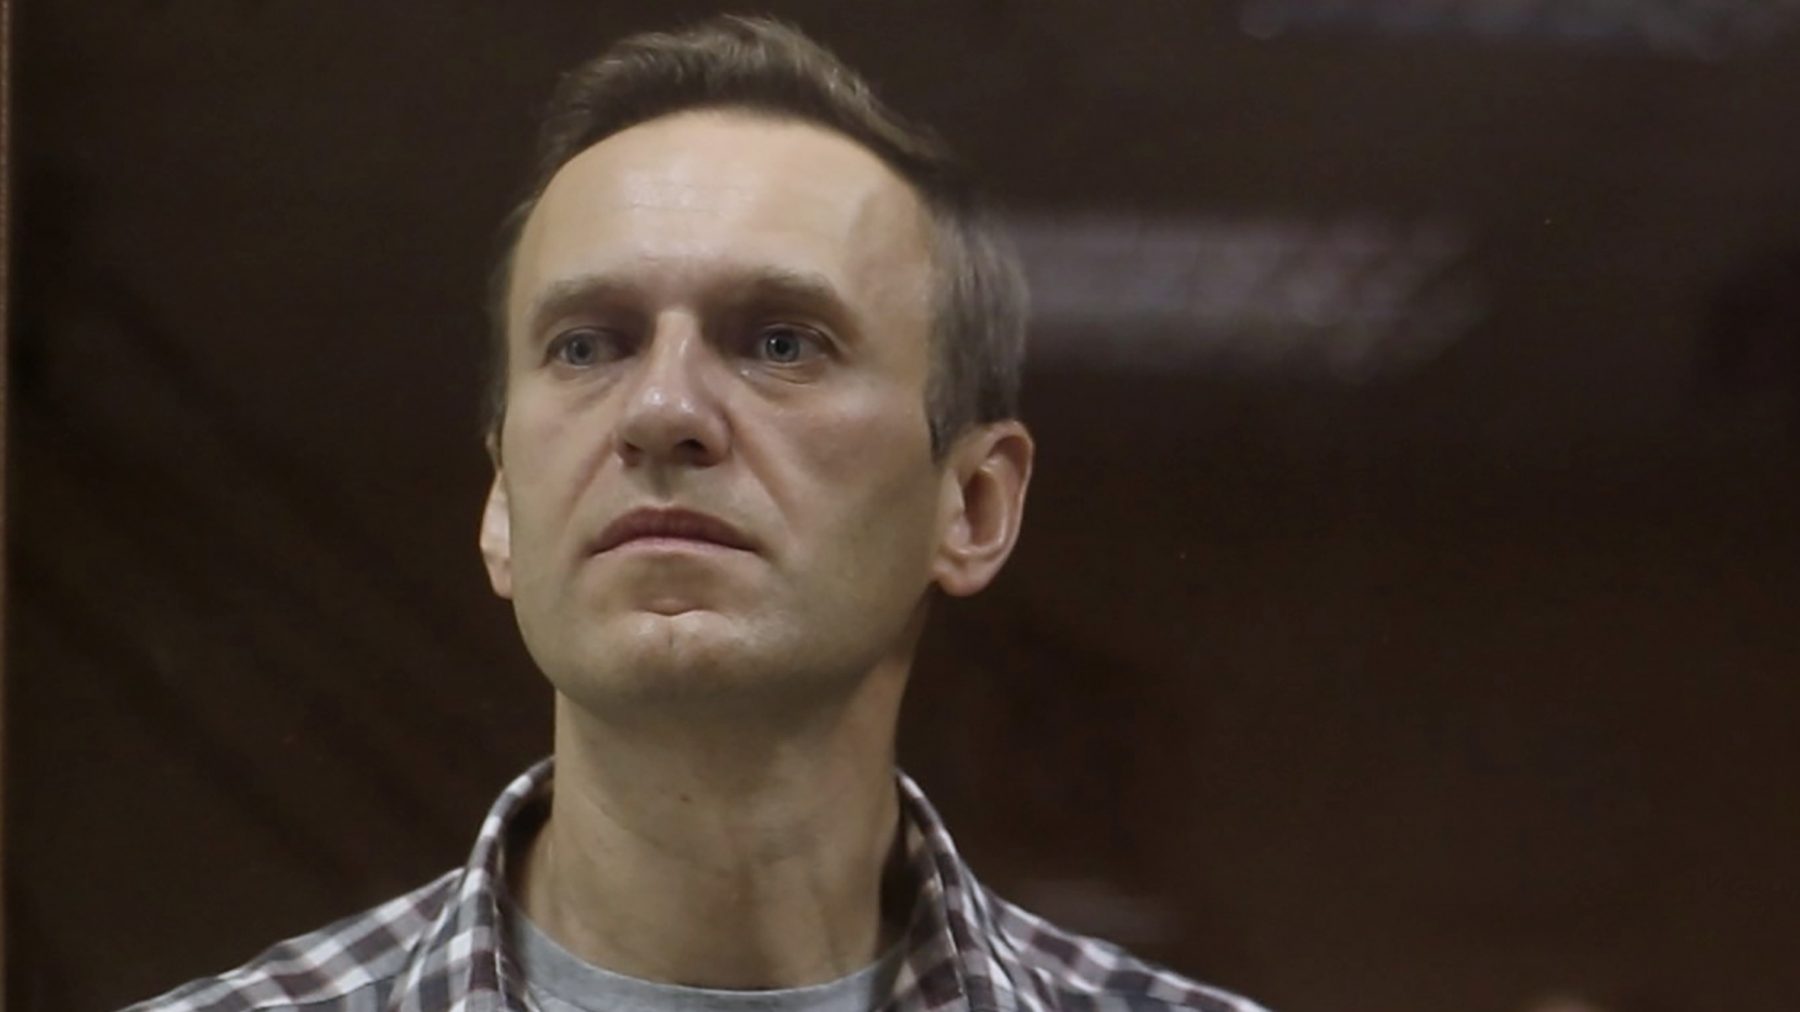 Russische oppositieleider Aleksej Navalny schuldig aan verduistering